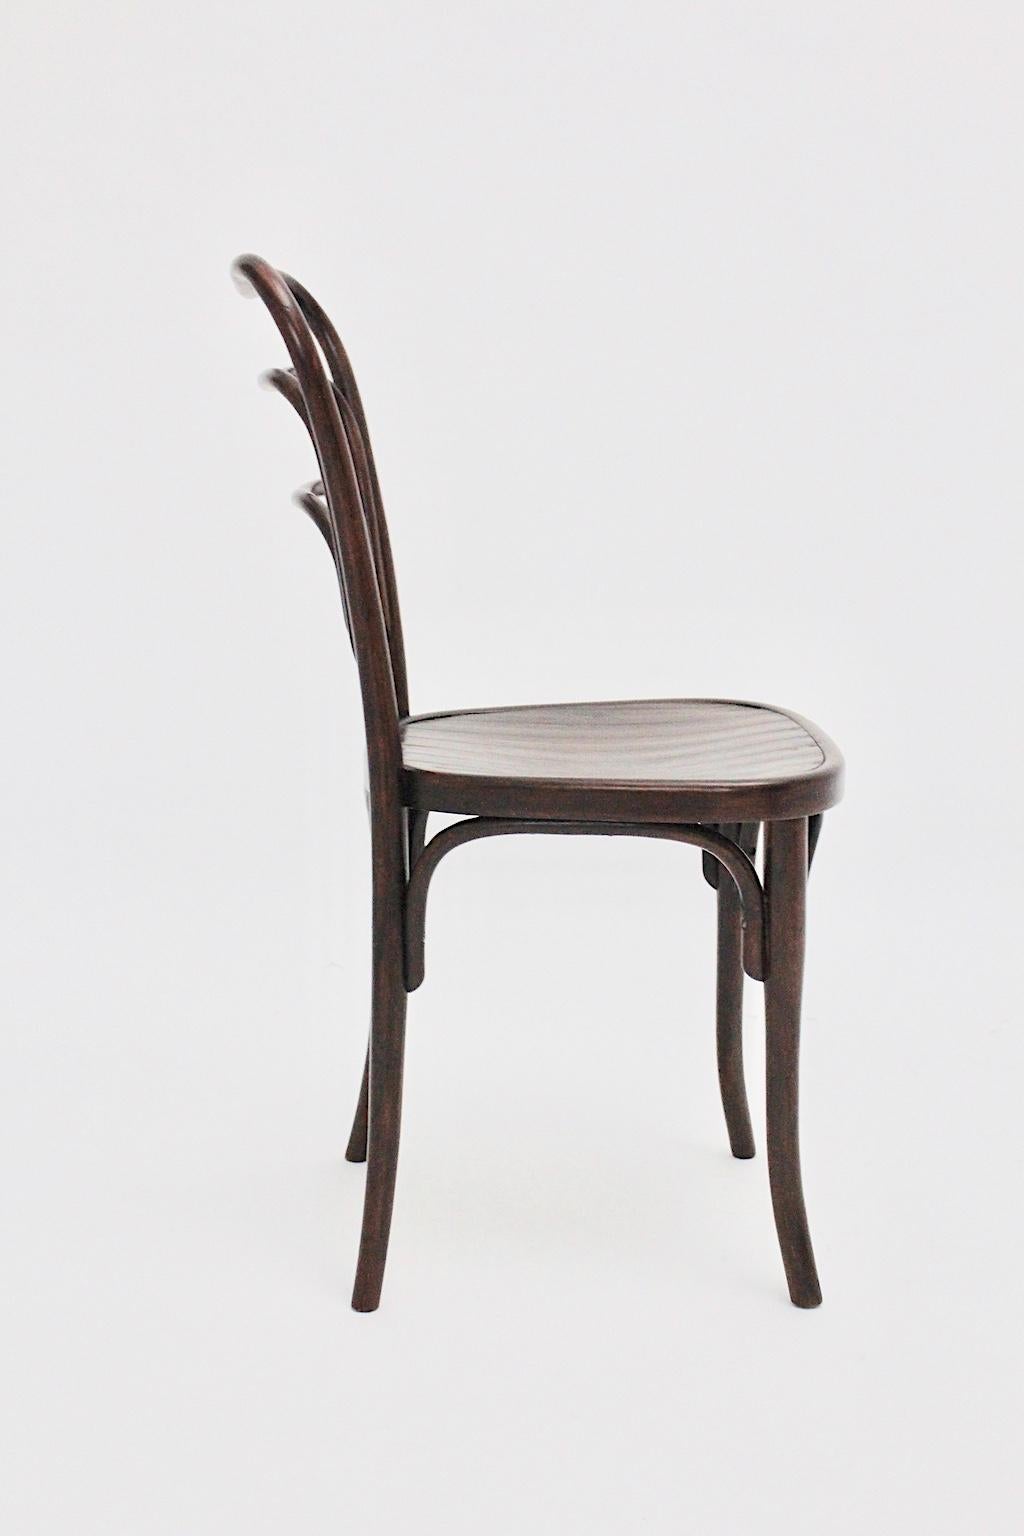 Austrian Jugendstil Vintage Bentwood Chair No 249 a by J. & J. Kohn, circa 1916, Austria For Sale